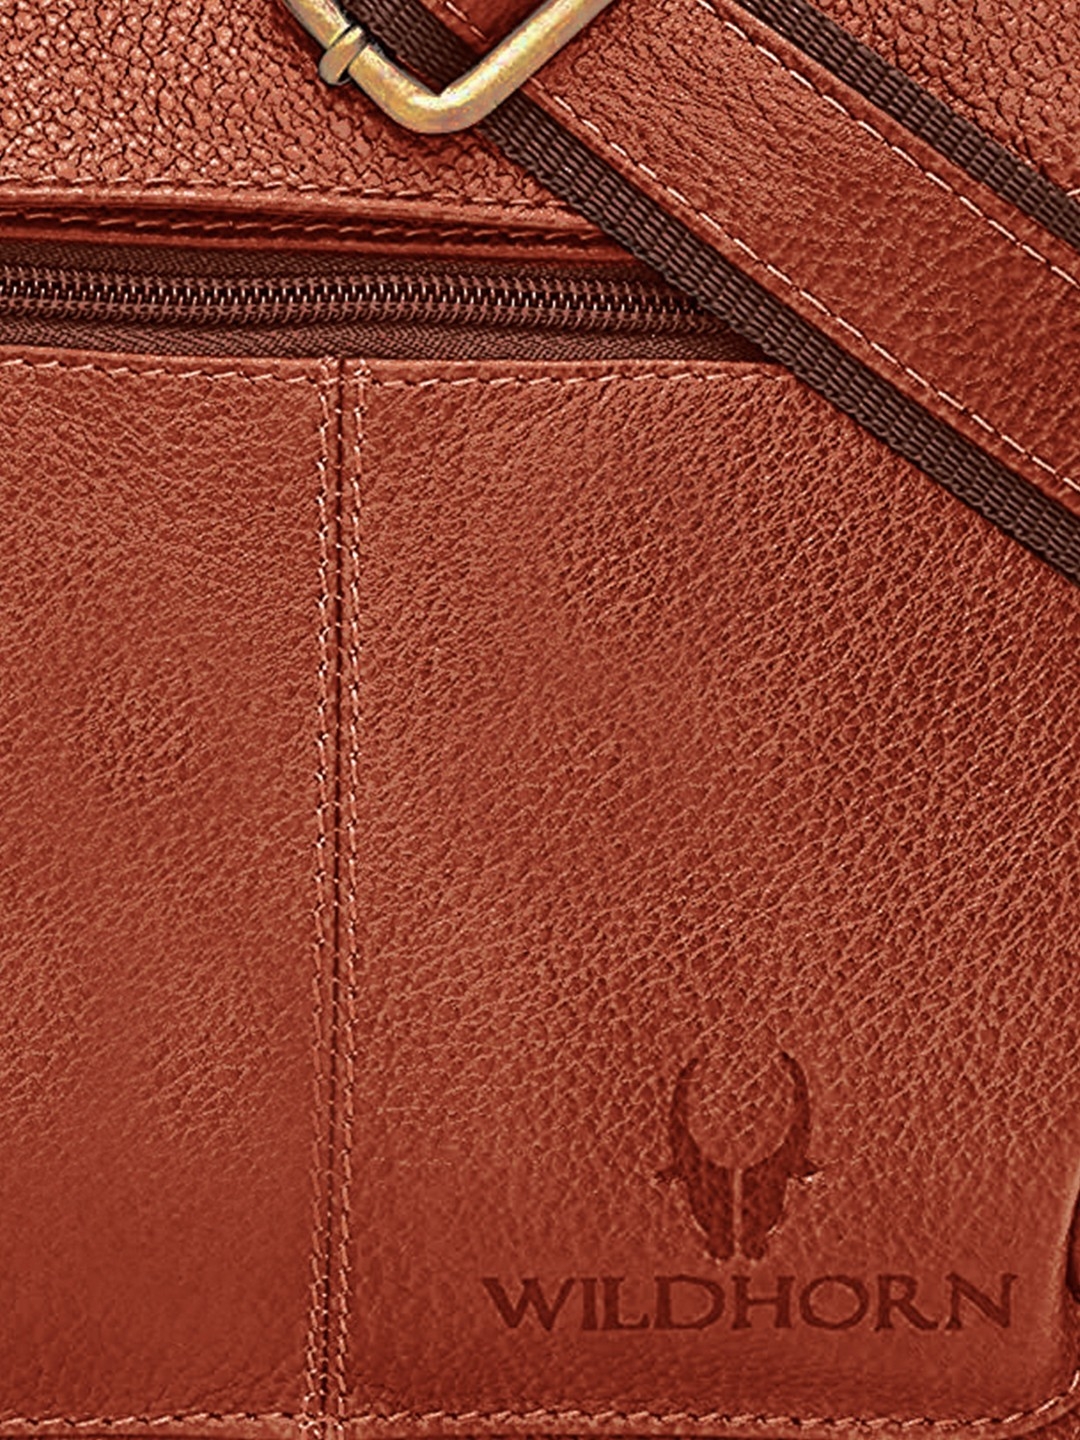 WildHorn | WildHorn Tan Classic Leather Adjustable Strap Sling Bag for Men  4